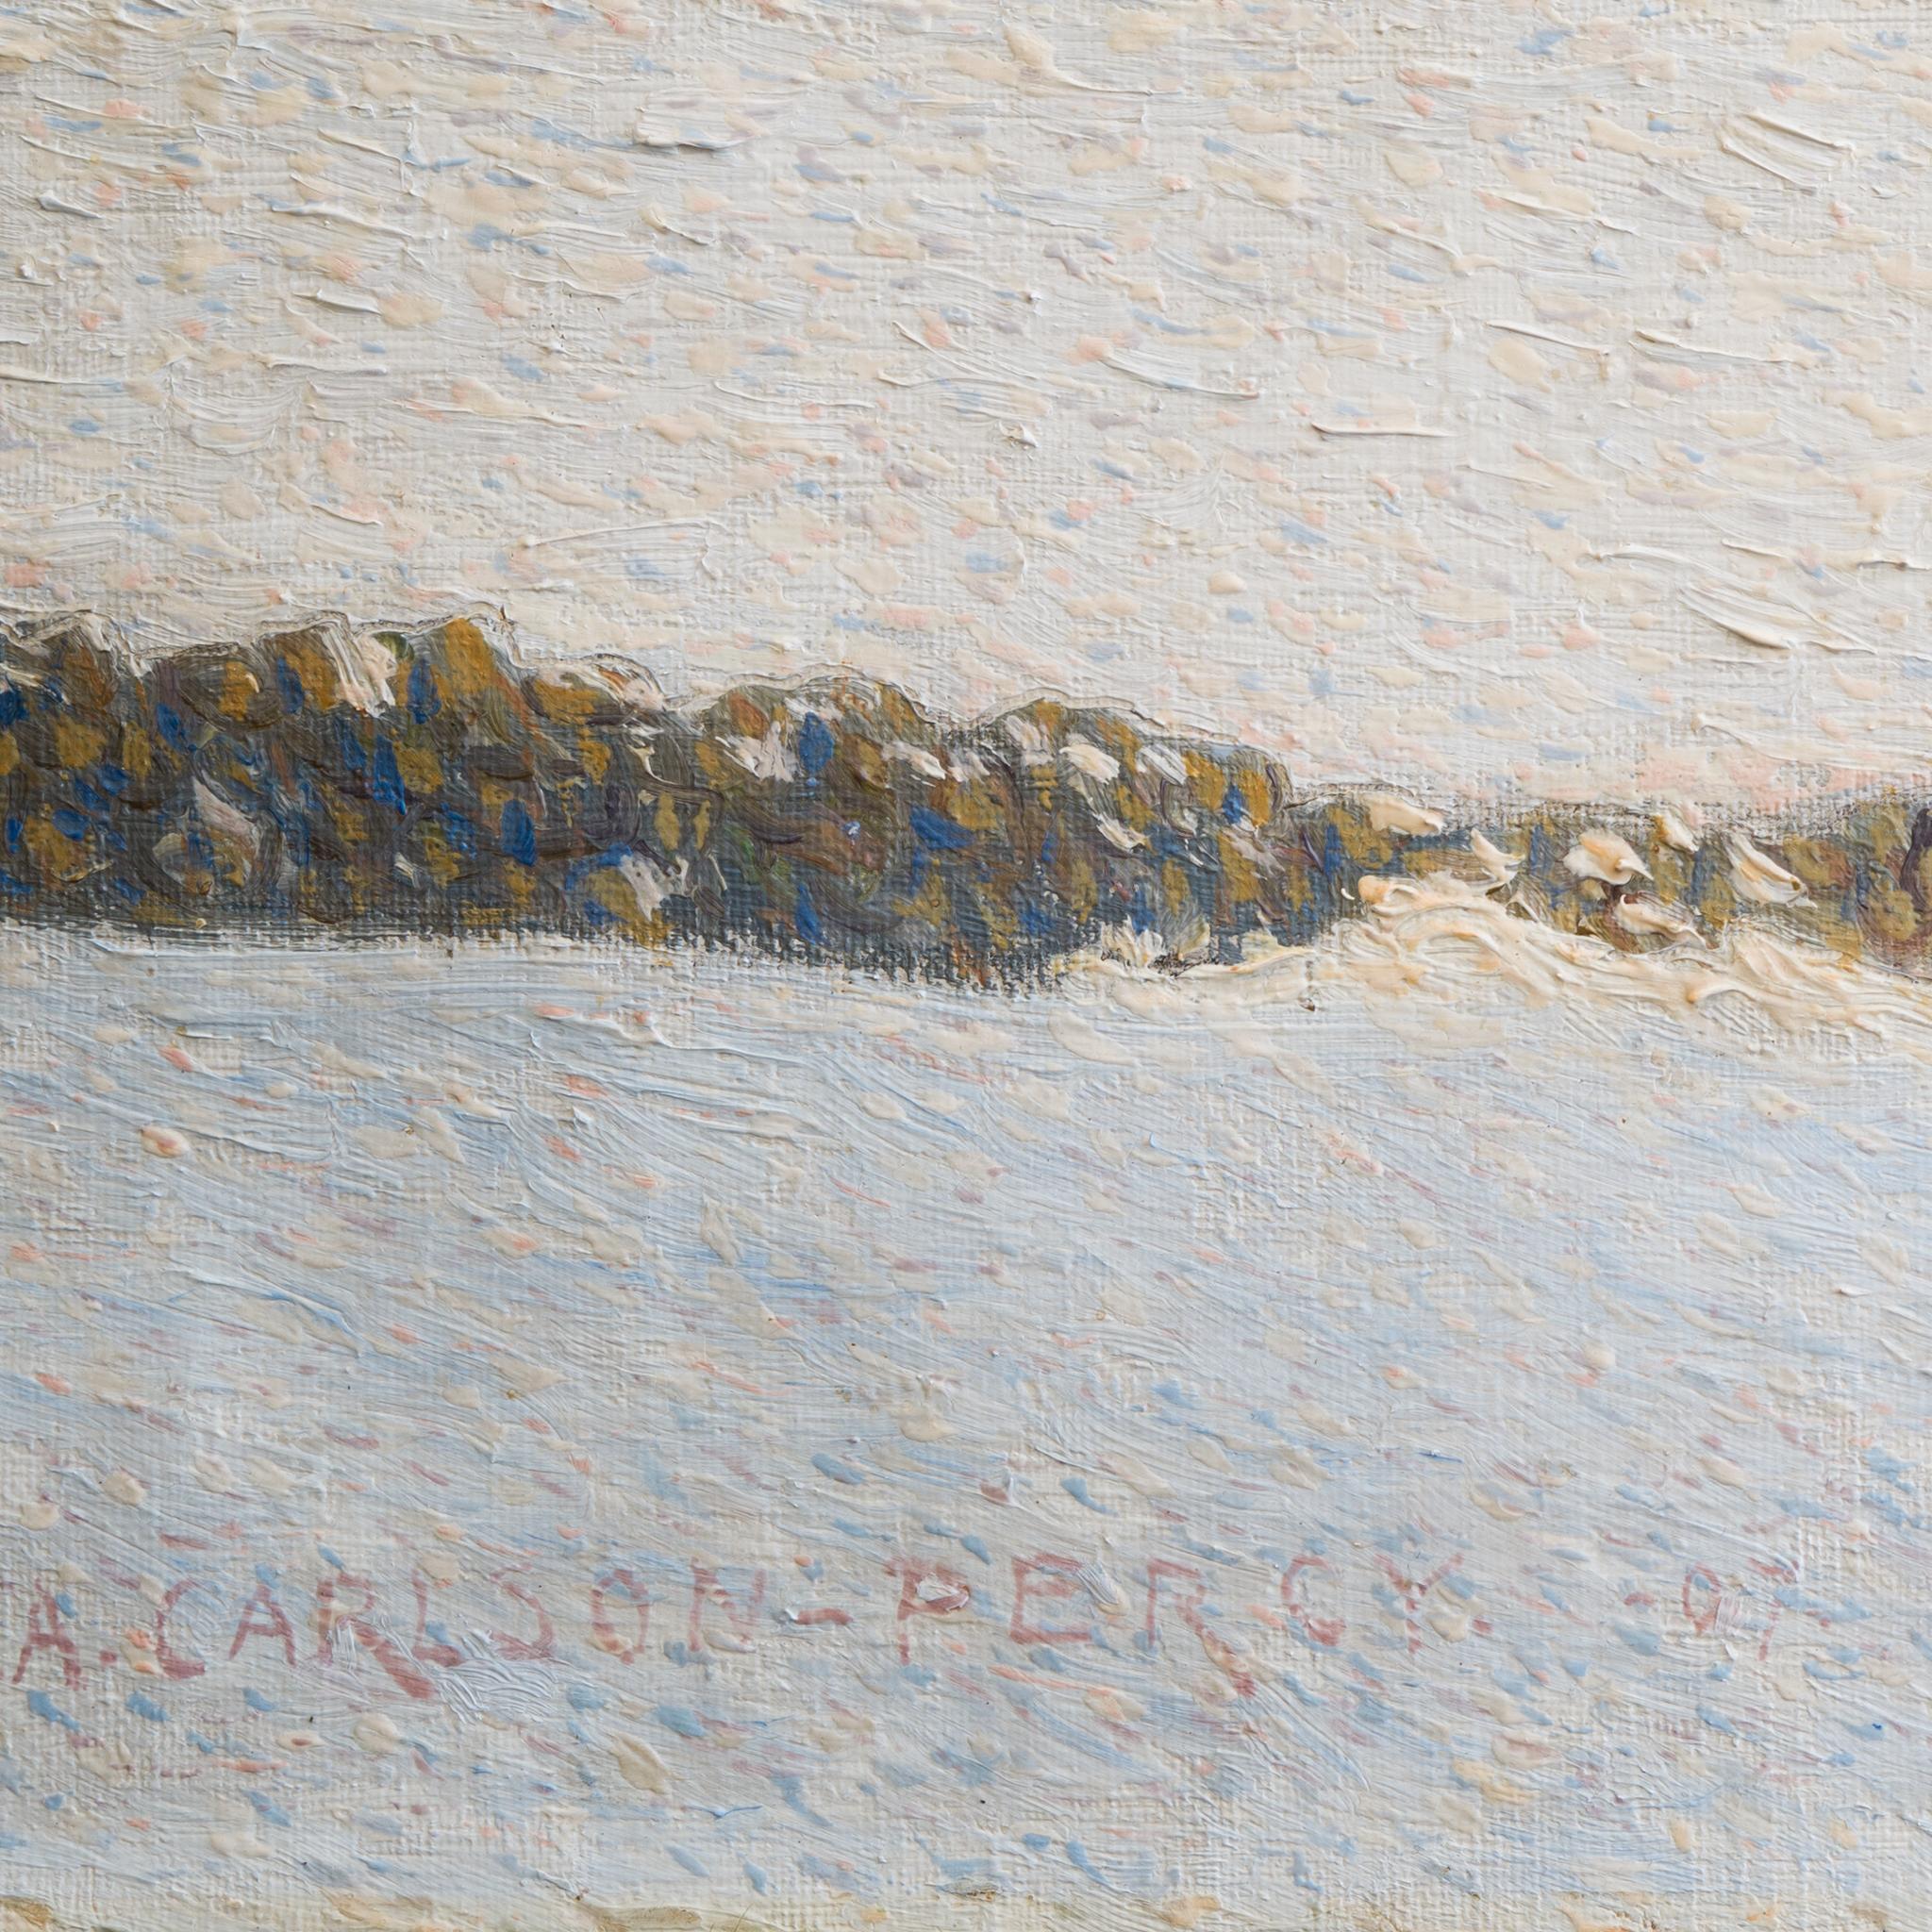 Pointillist - Scandinavian Winter Landscape, 1907 by Arthur Percy  For Sale 4